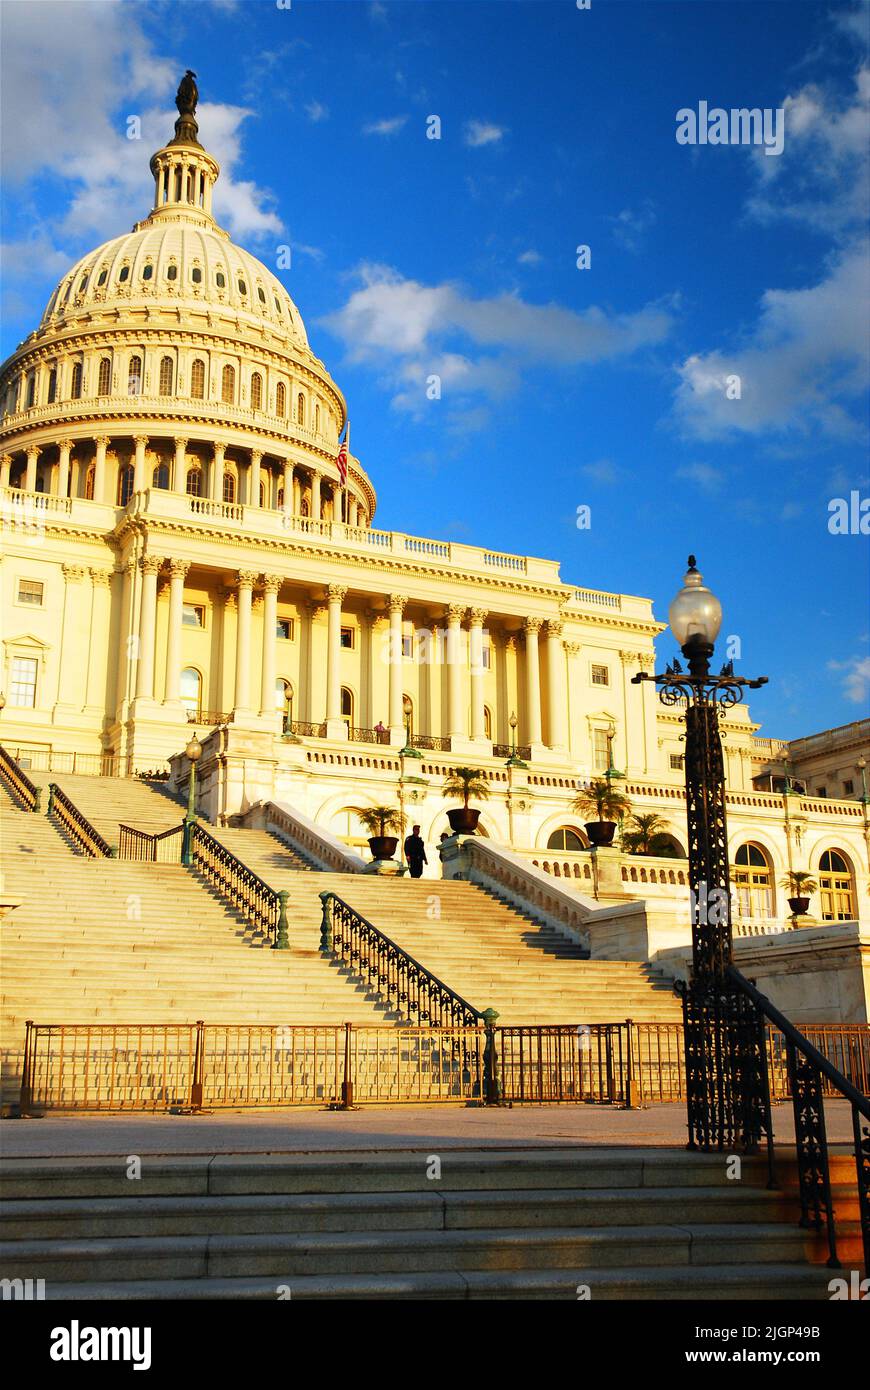 Las escaleras conducen al Capitolio de los Estados Unidos, un símbolo e icono de la democracia y jefe del gobierno y la política en Washington, DC Foto de stock